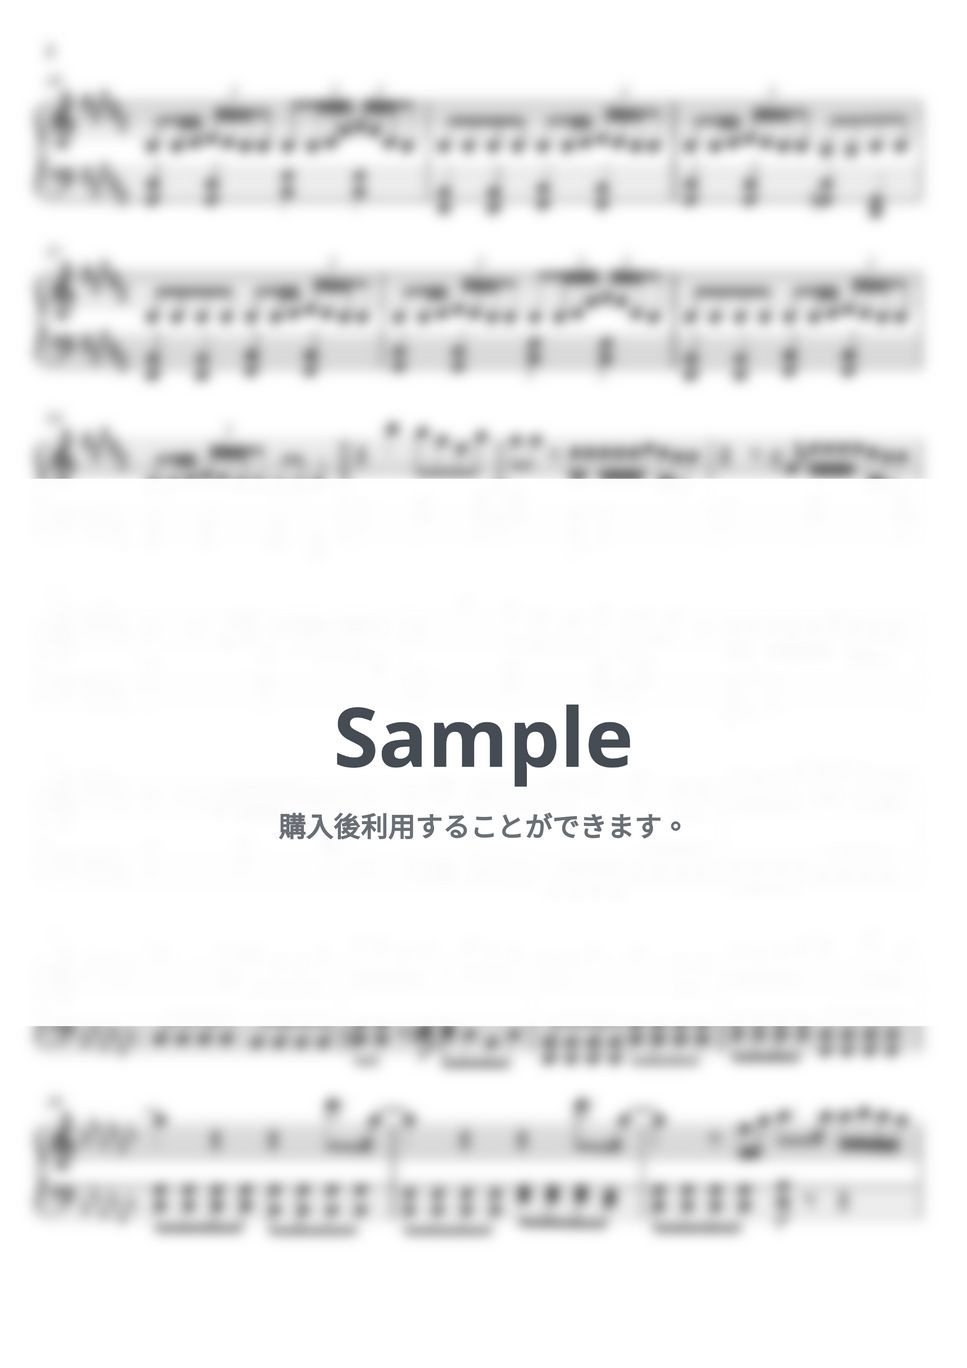 ヨルシカ - 雨とカプチーノ (ピアノ楽譜 / 初級) by Piano Lovers.jp